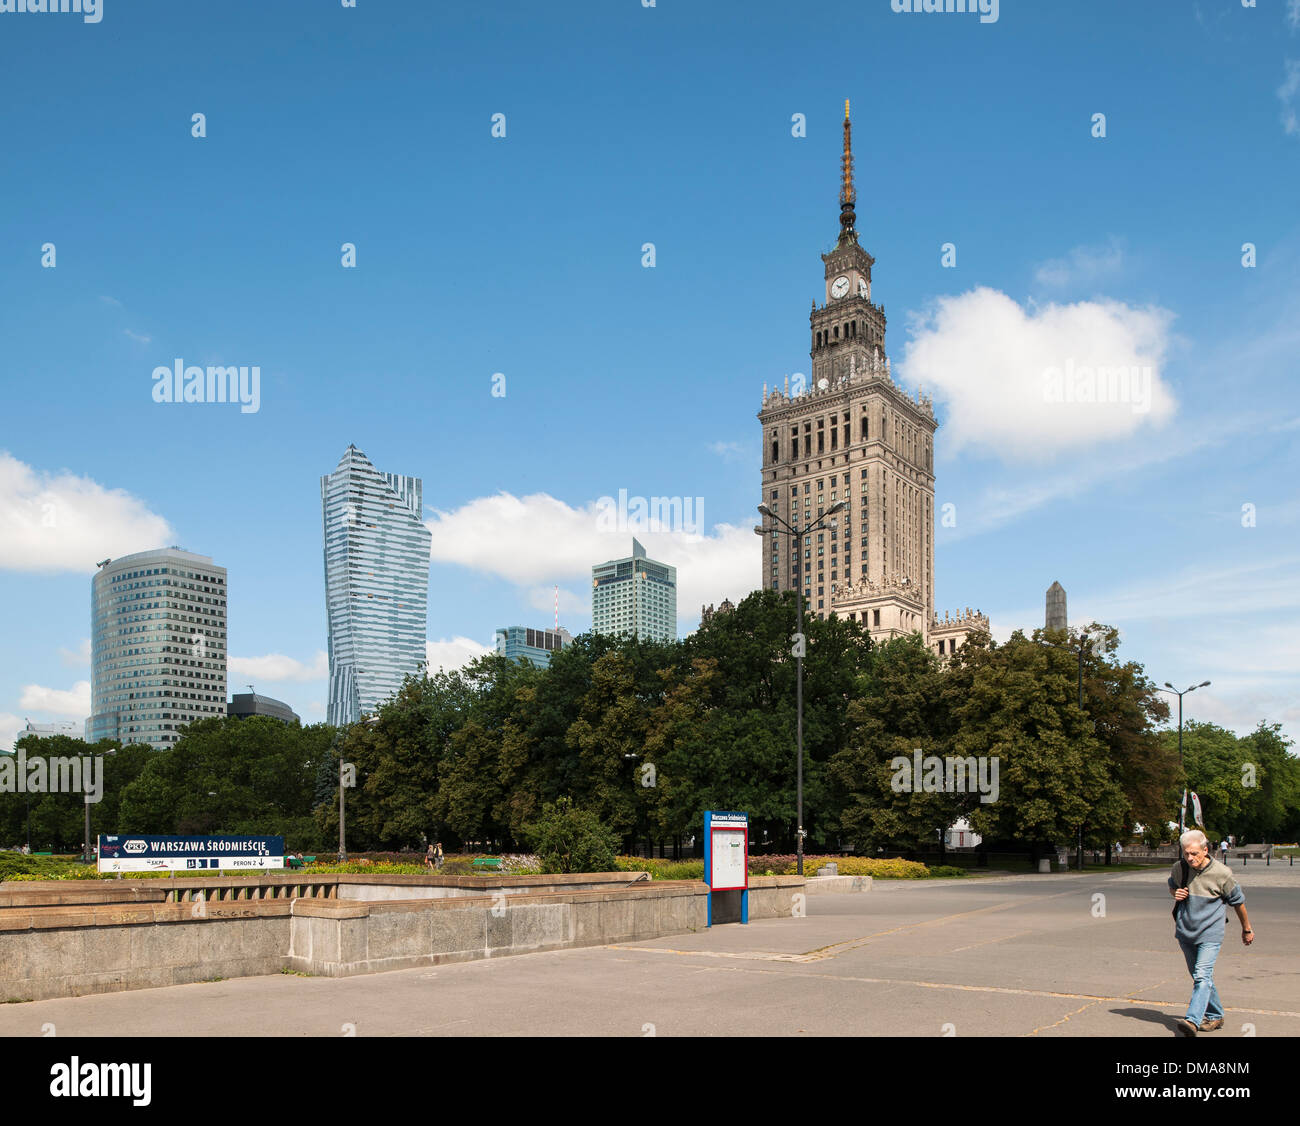 La ville de Varsovie, Varsovie, Pologne. Architecte : Divers, 2013. Matin vue du Palais de la Culture stalinienne comme vu à partir de la Parade Banque D'Images